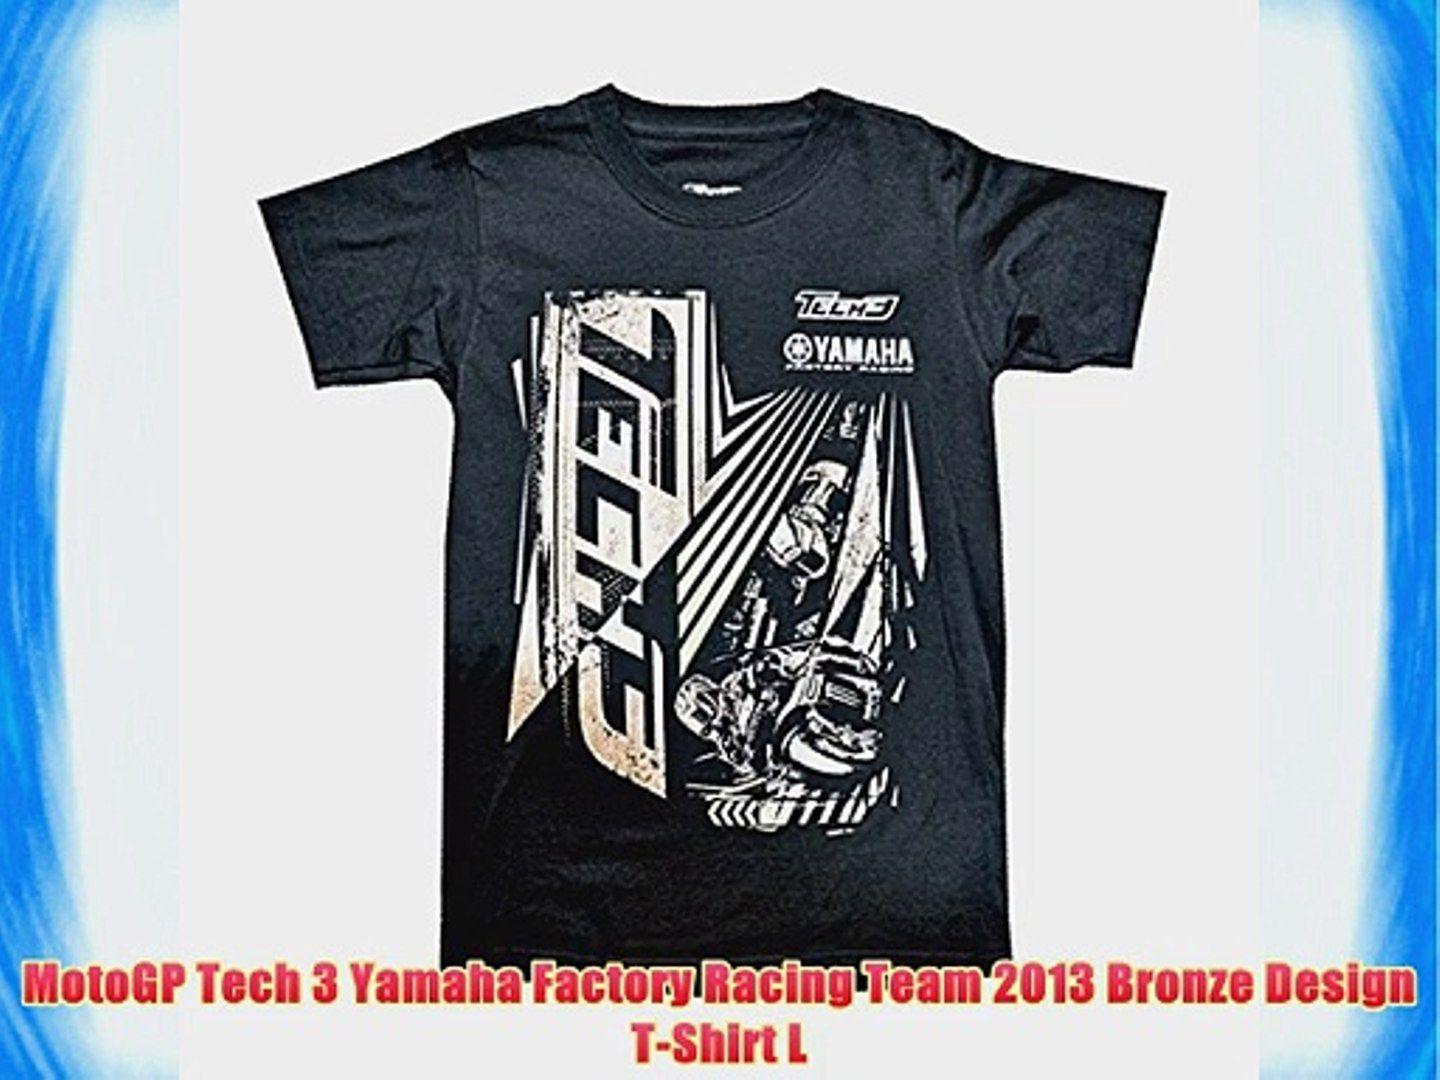 Bronze Yamaha Logo - MotoGP Tech 3 Yamaha Factory Racing Team 2013 Bronze Design T Shirt